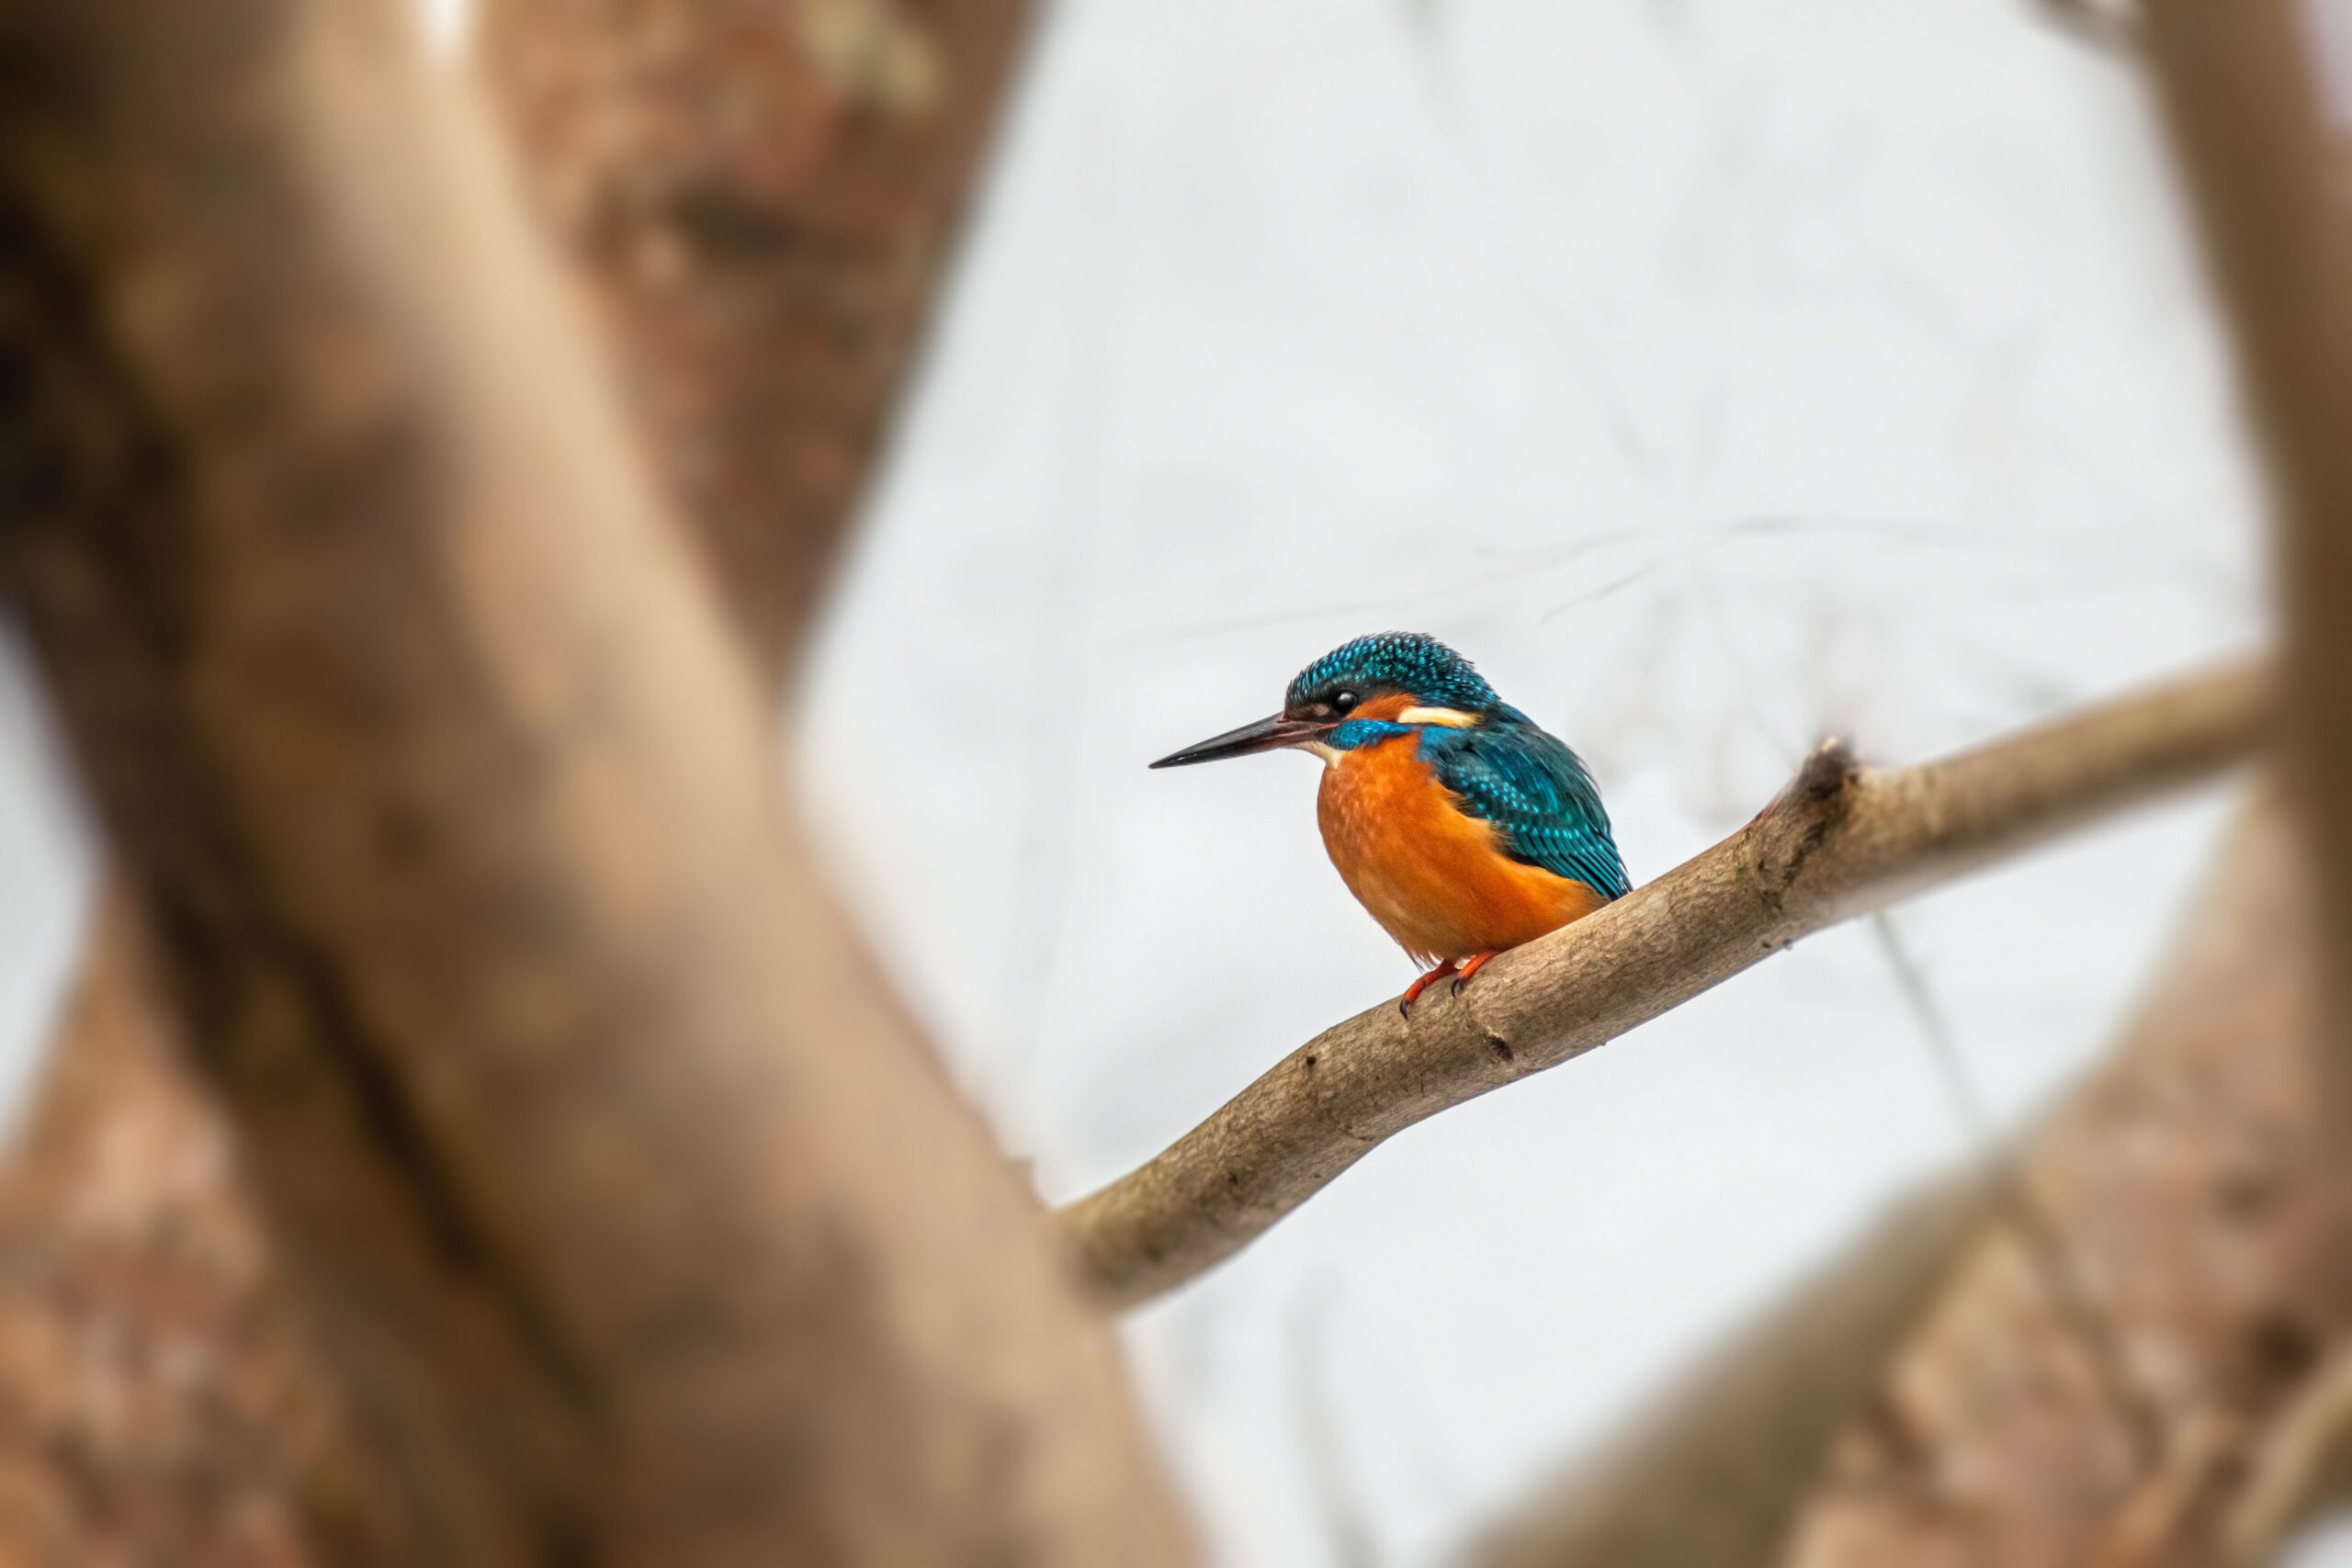 Bird-Images-Nature-Images-Ecosystem-Portrait-Animal Wildlife-Kingfisher